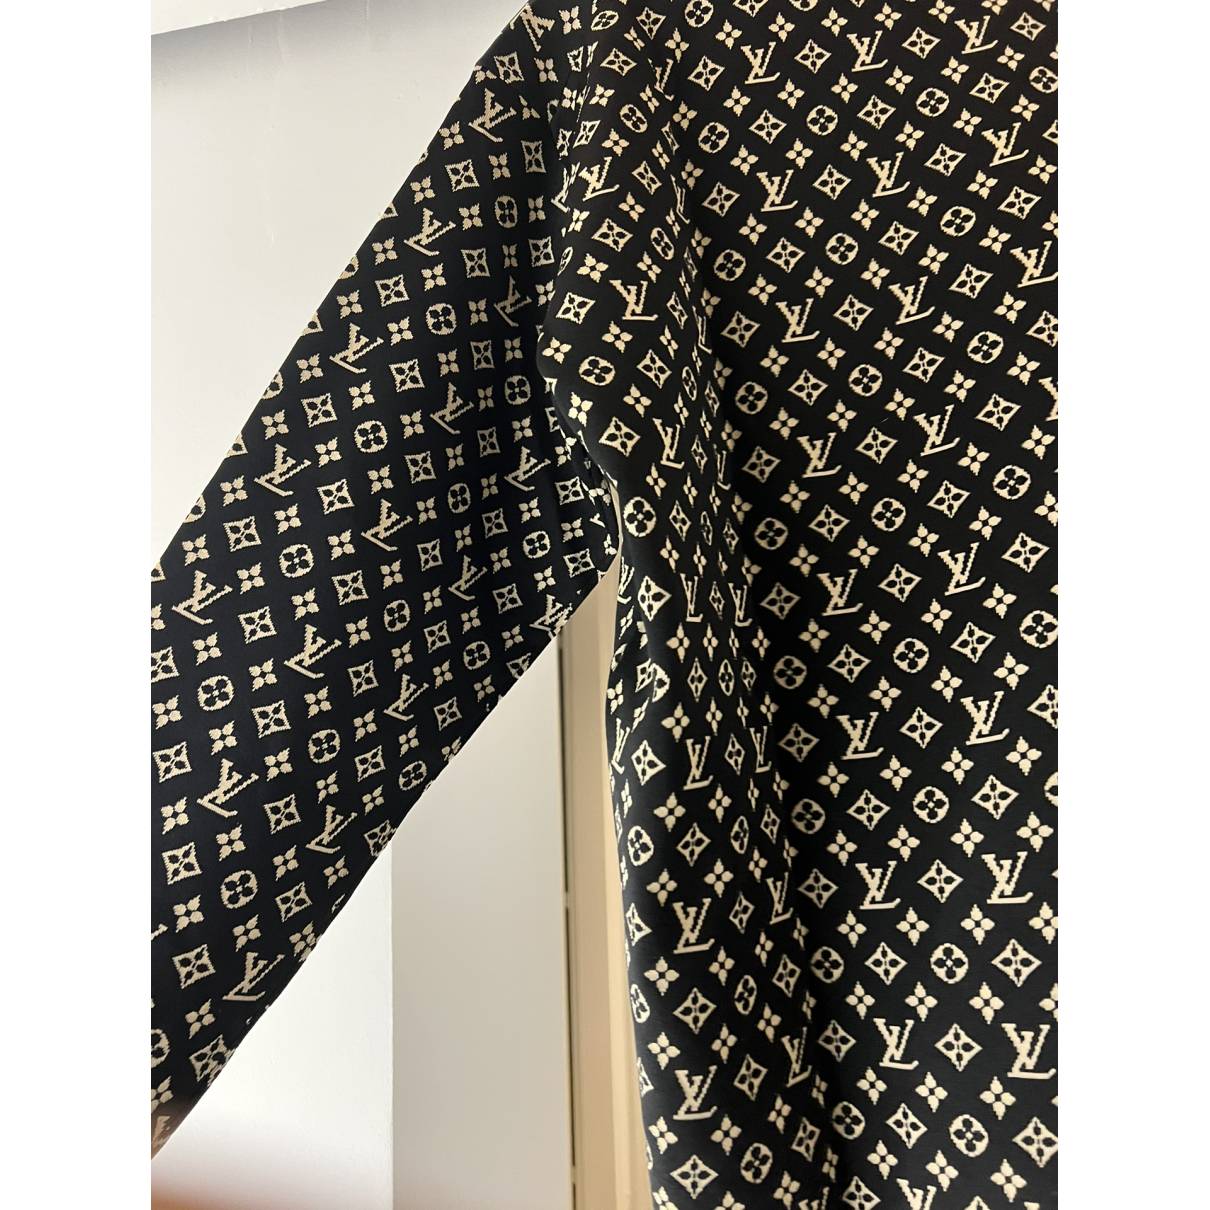 Louis Vuitton Knitted Jersey – Hypedstreetgear